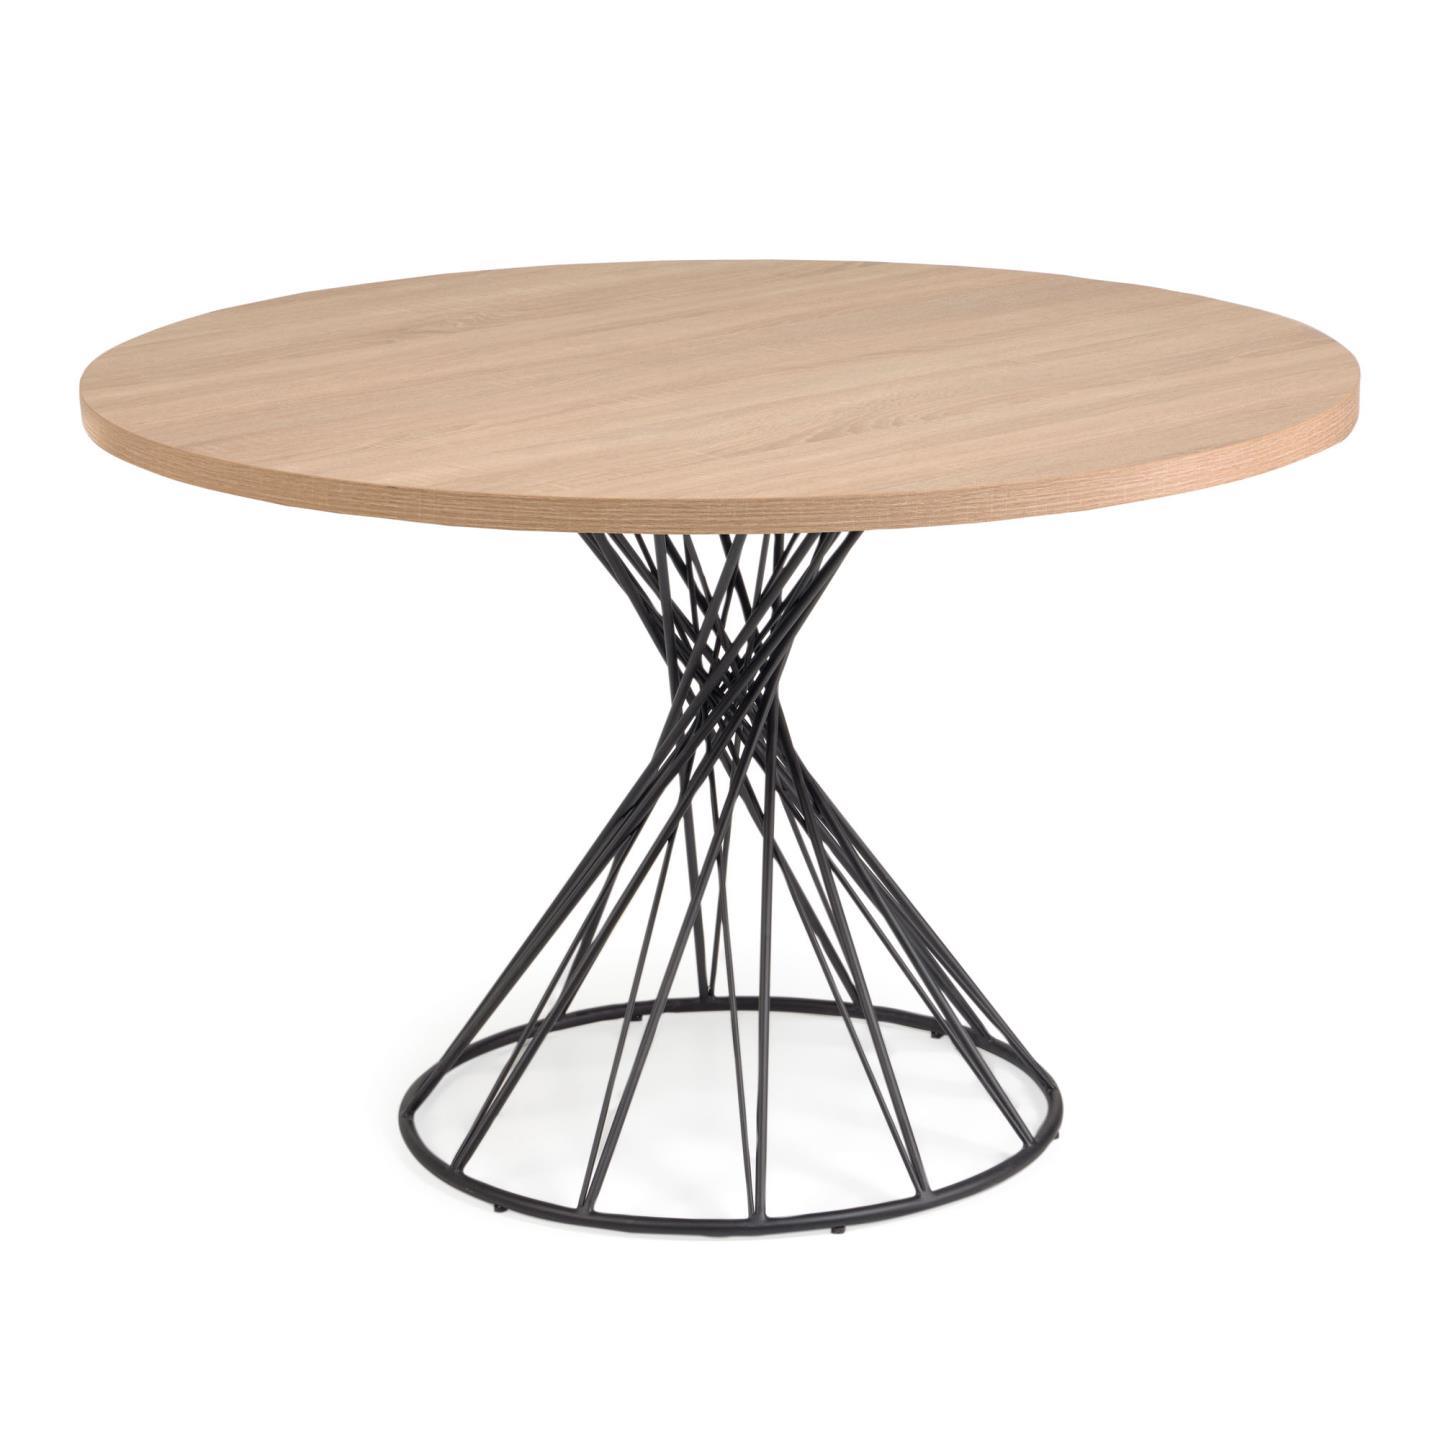 2: LAFORMA Niut spisebord, rundt (Ø: 120cm), træ (MDF) i naturfinnish med stålben